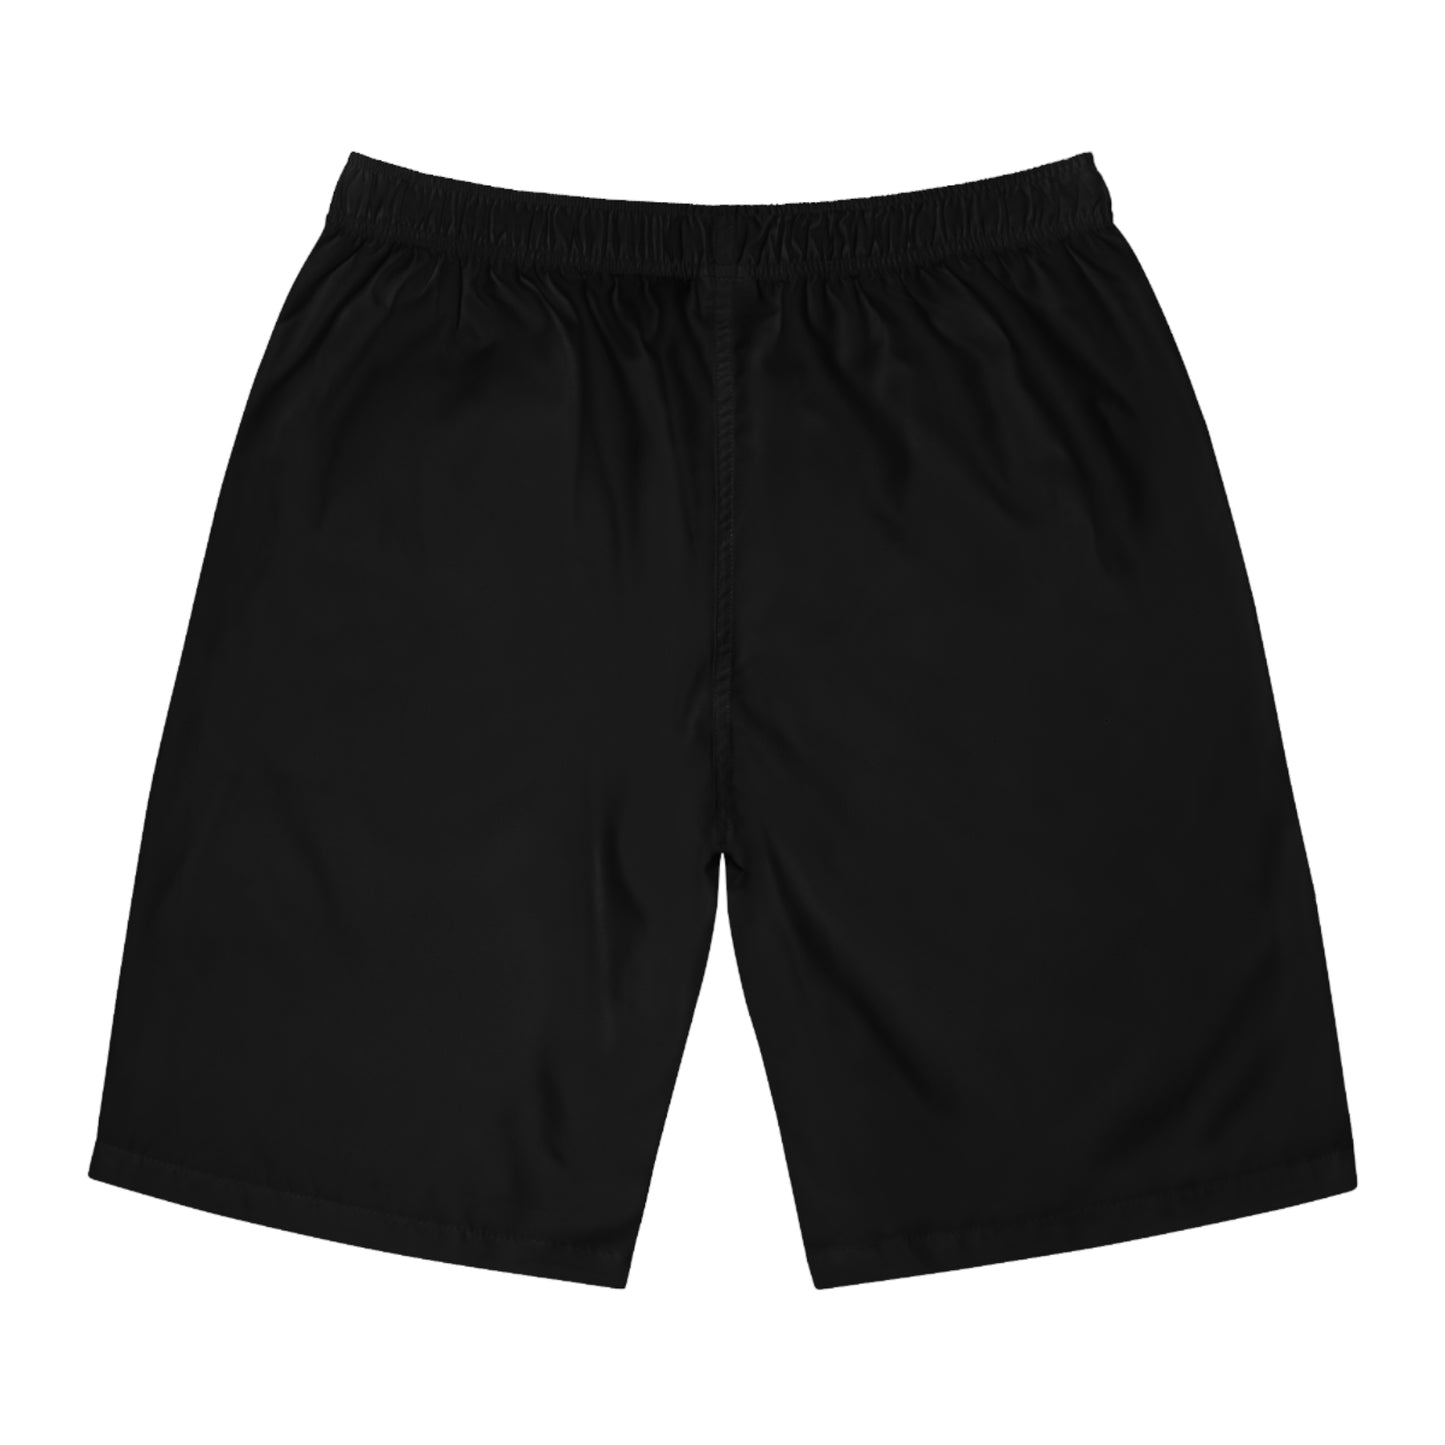 Jus' Believe Men's Board Shorts